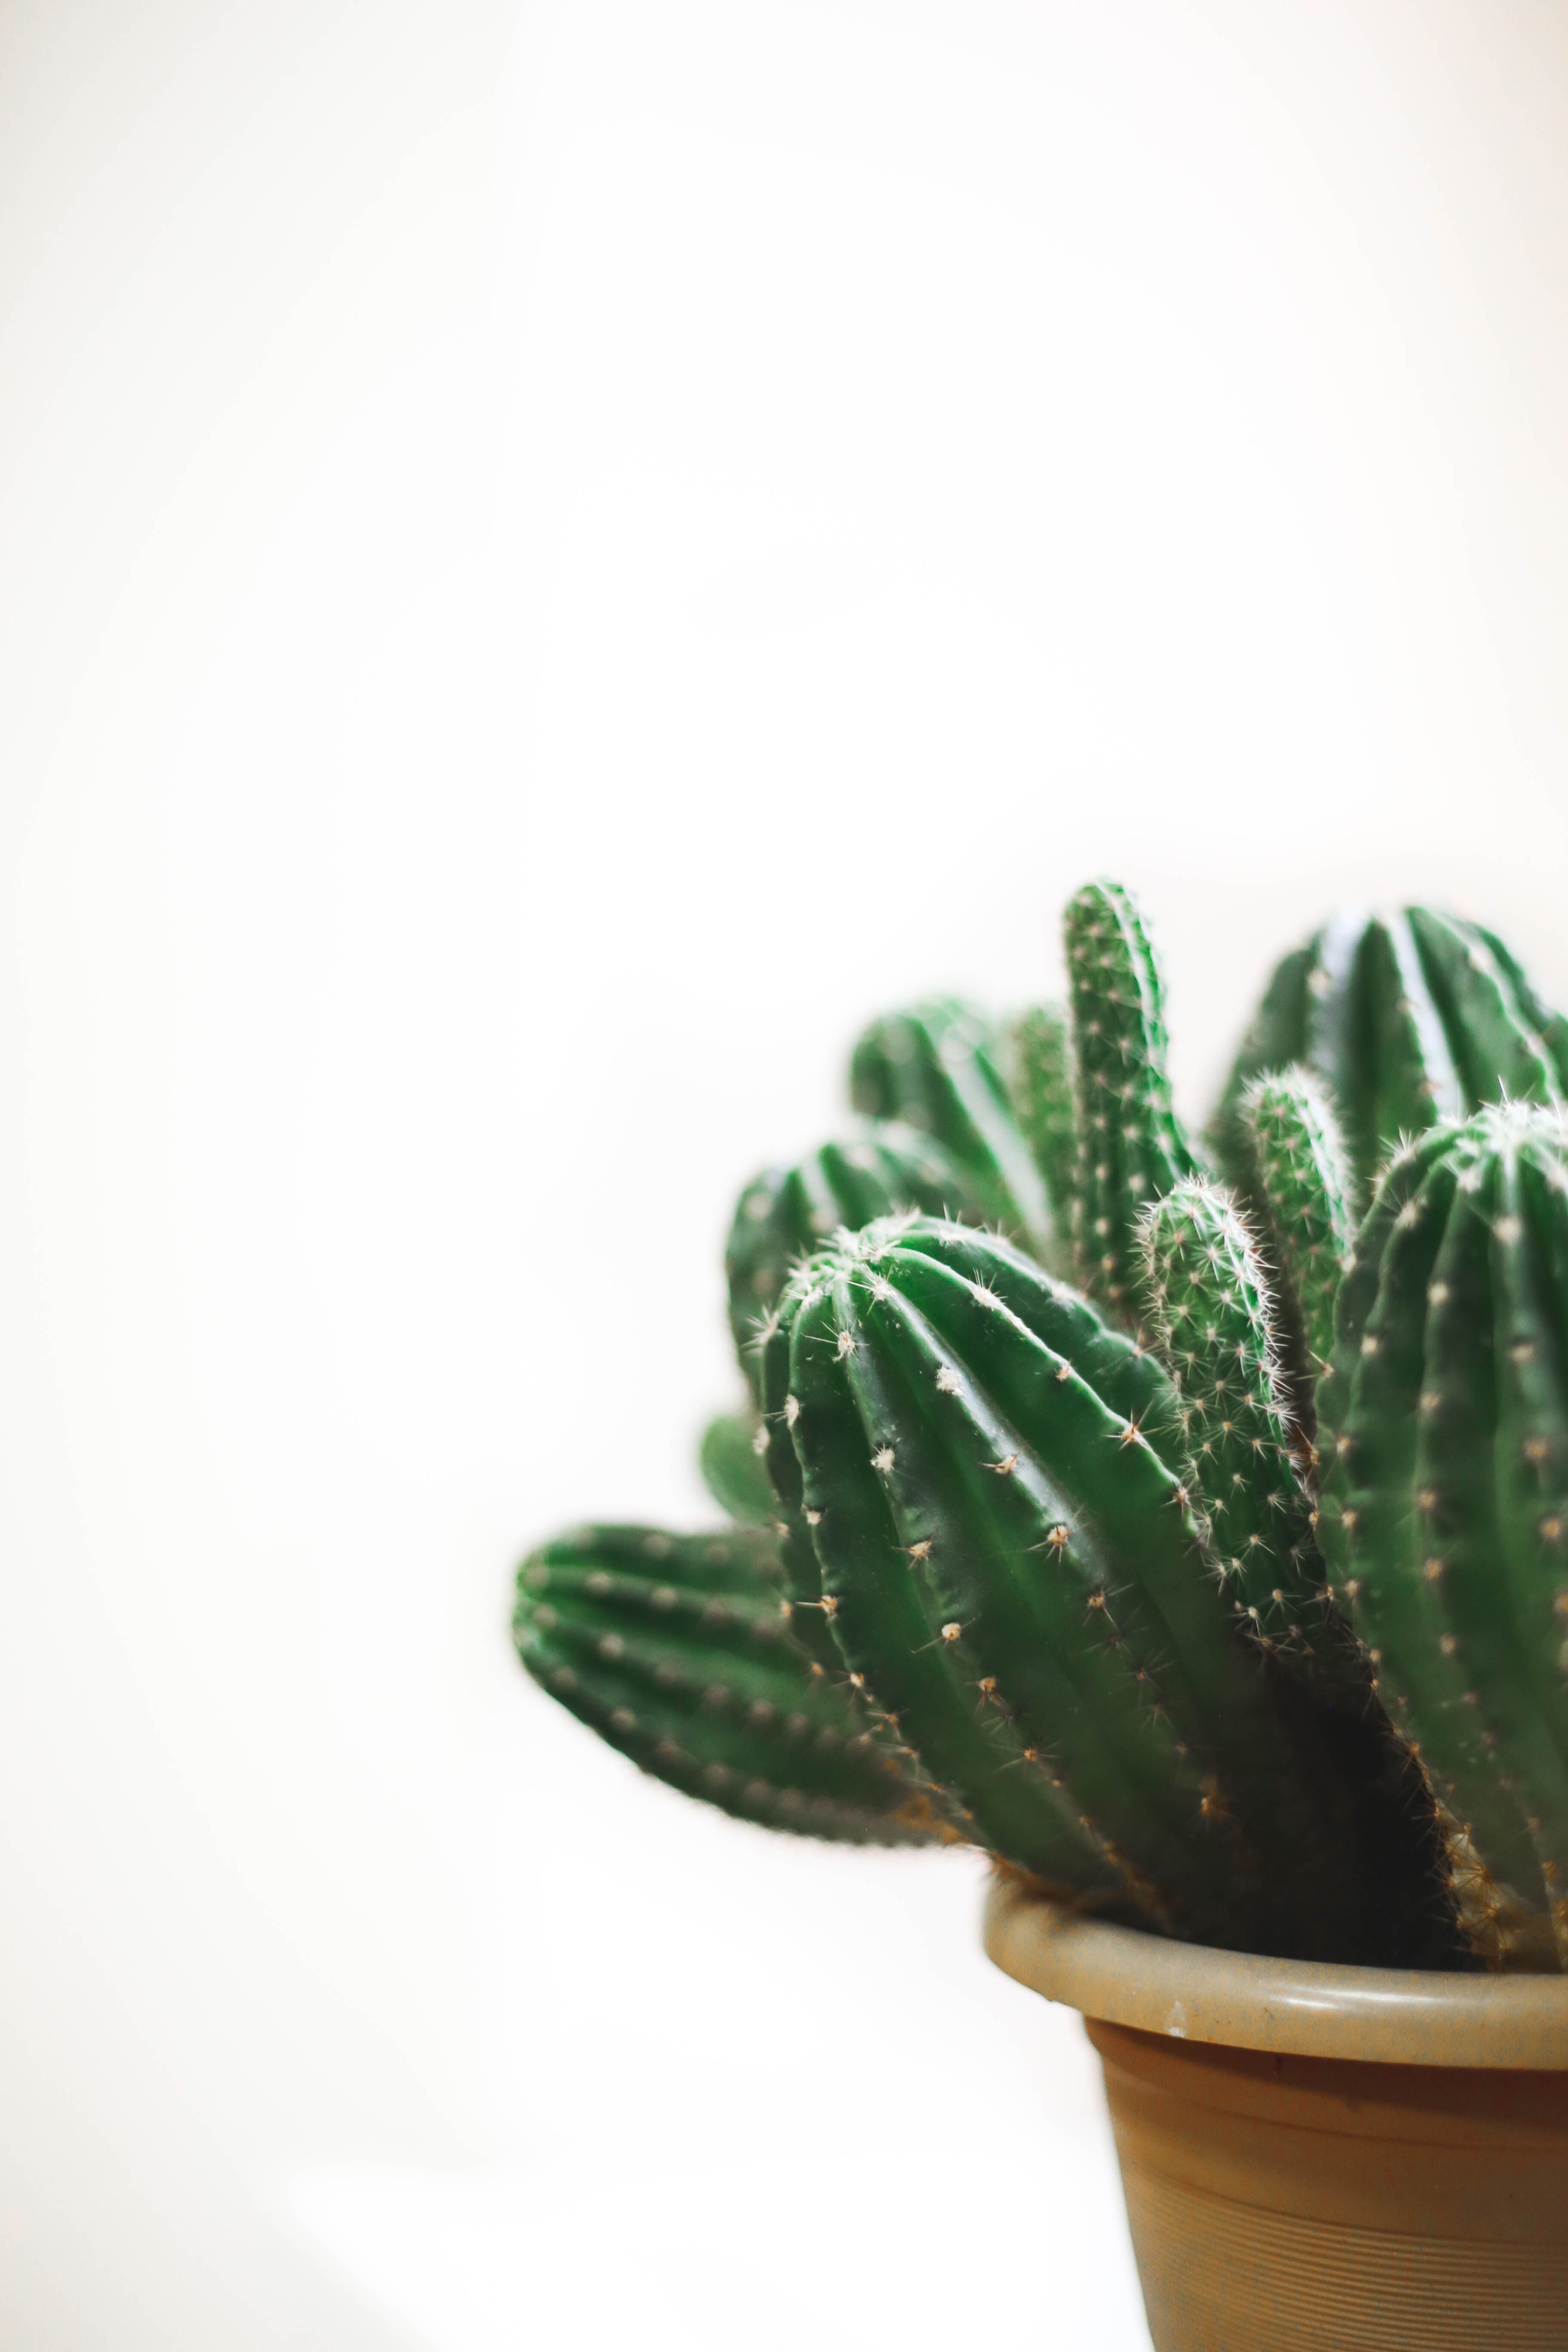 A cactus plant in an earthenware pot - Cactus